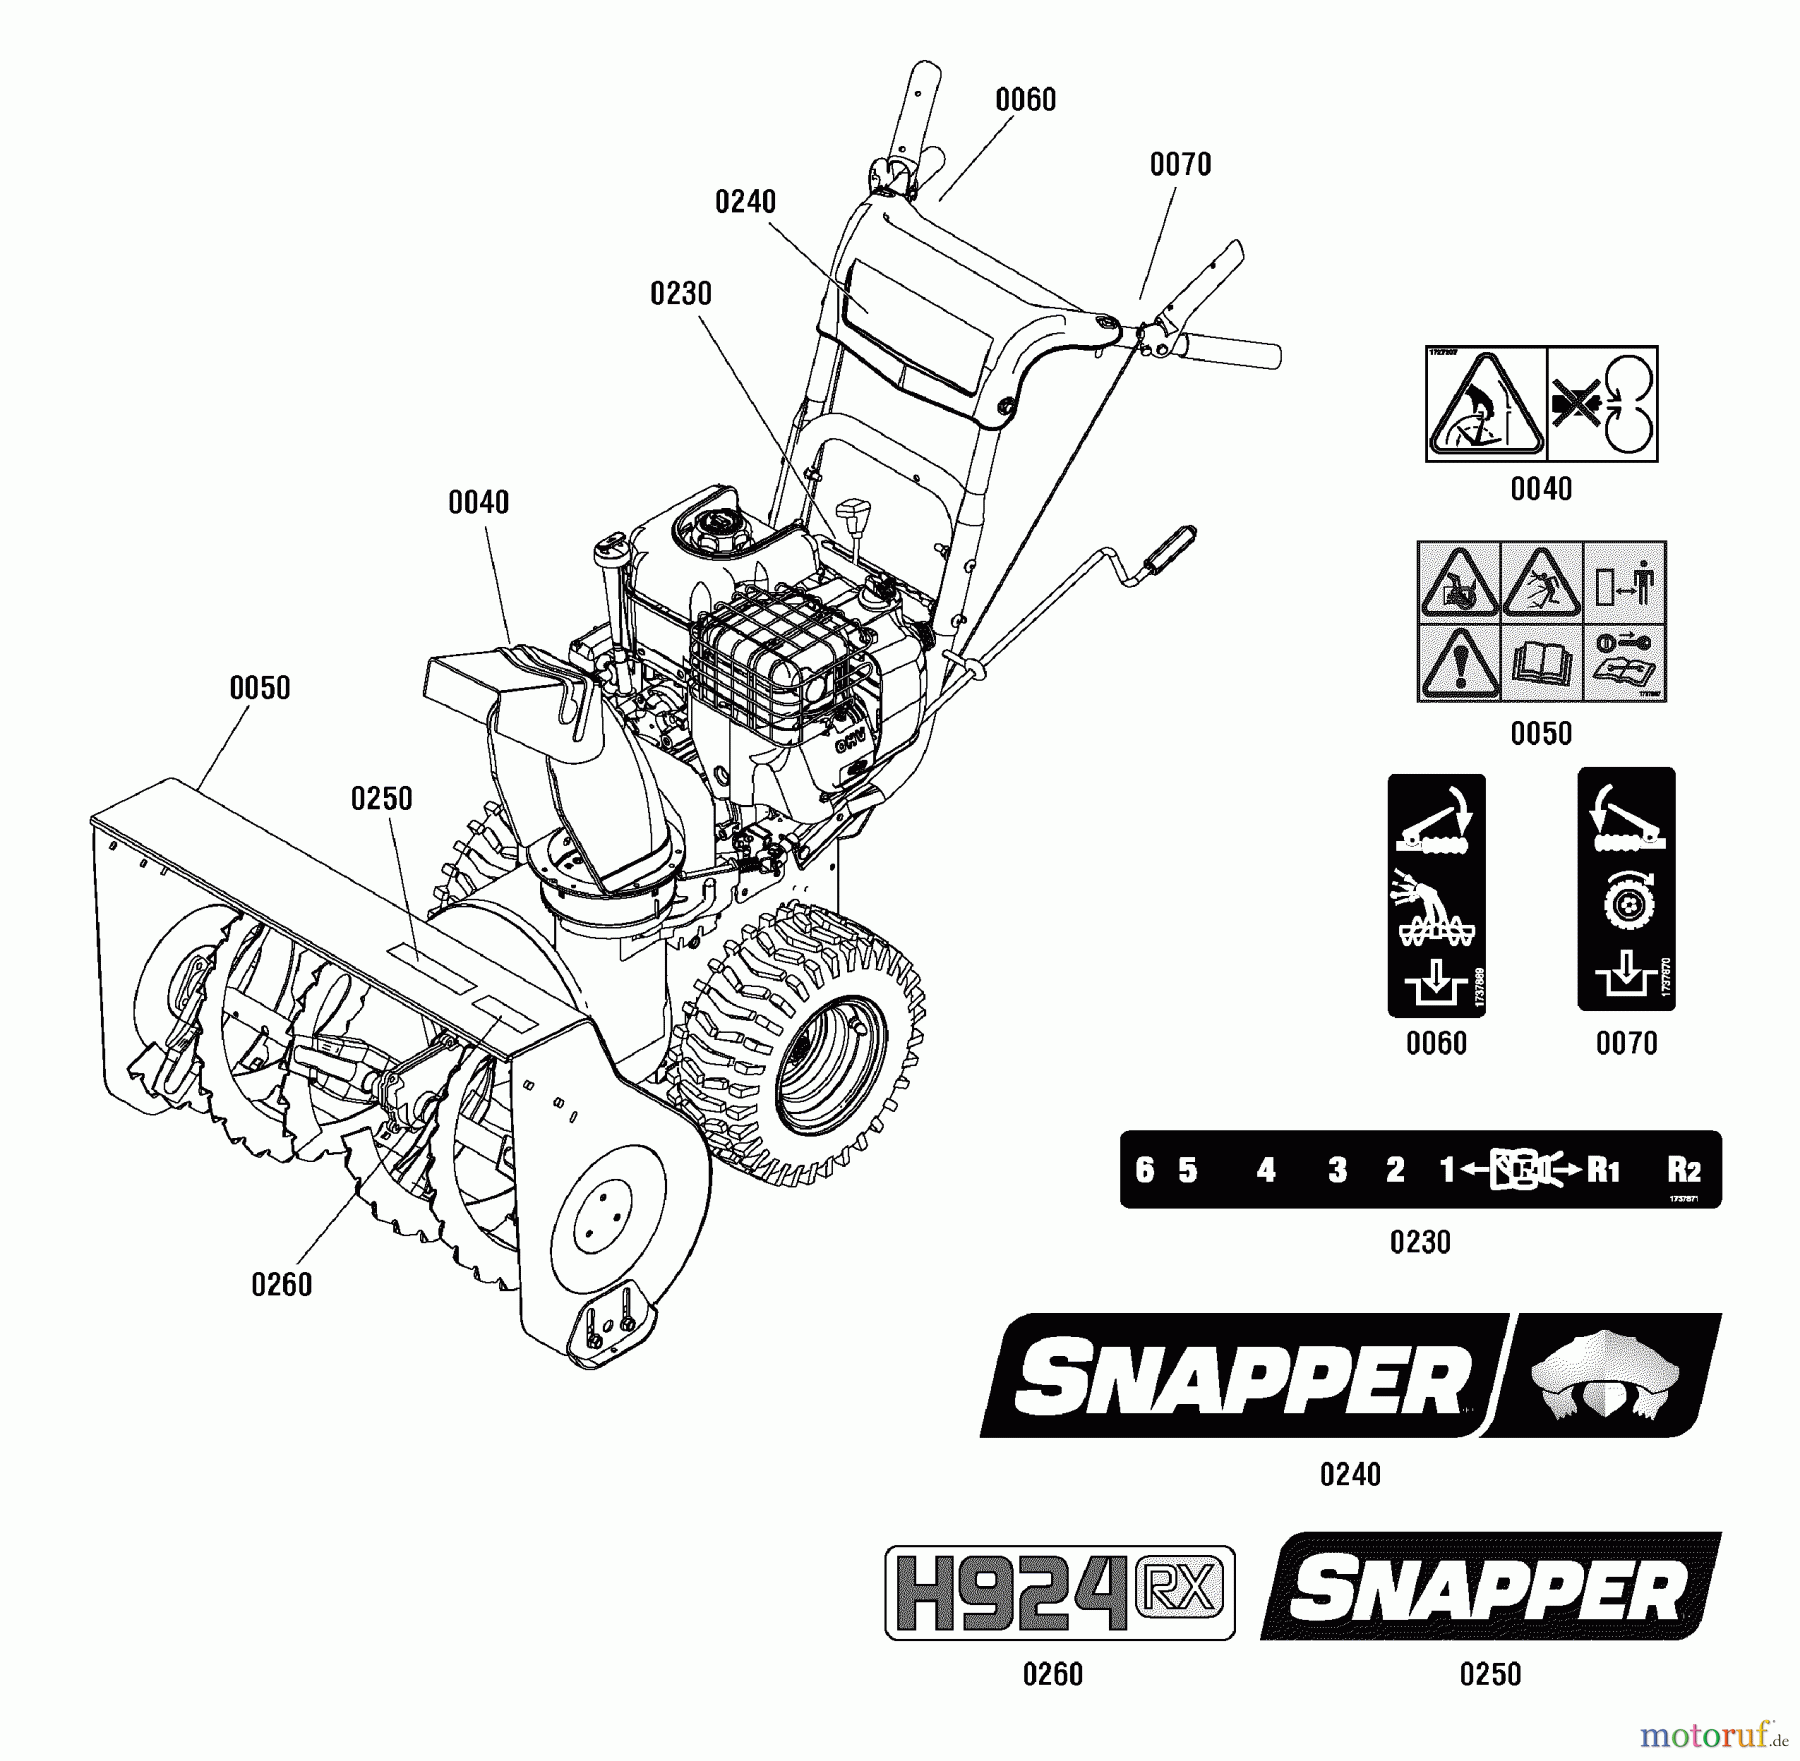  Snapper Schneefräsen H924RX (1696008) - Snapper 24